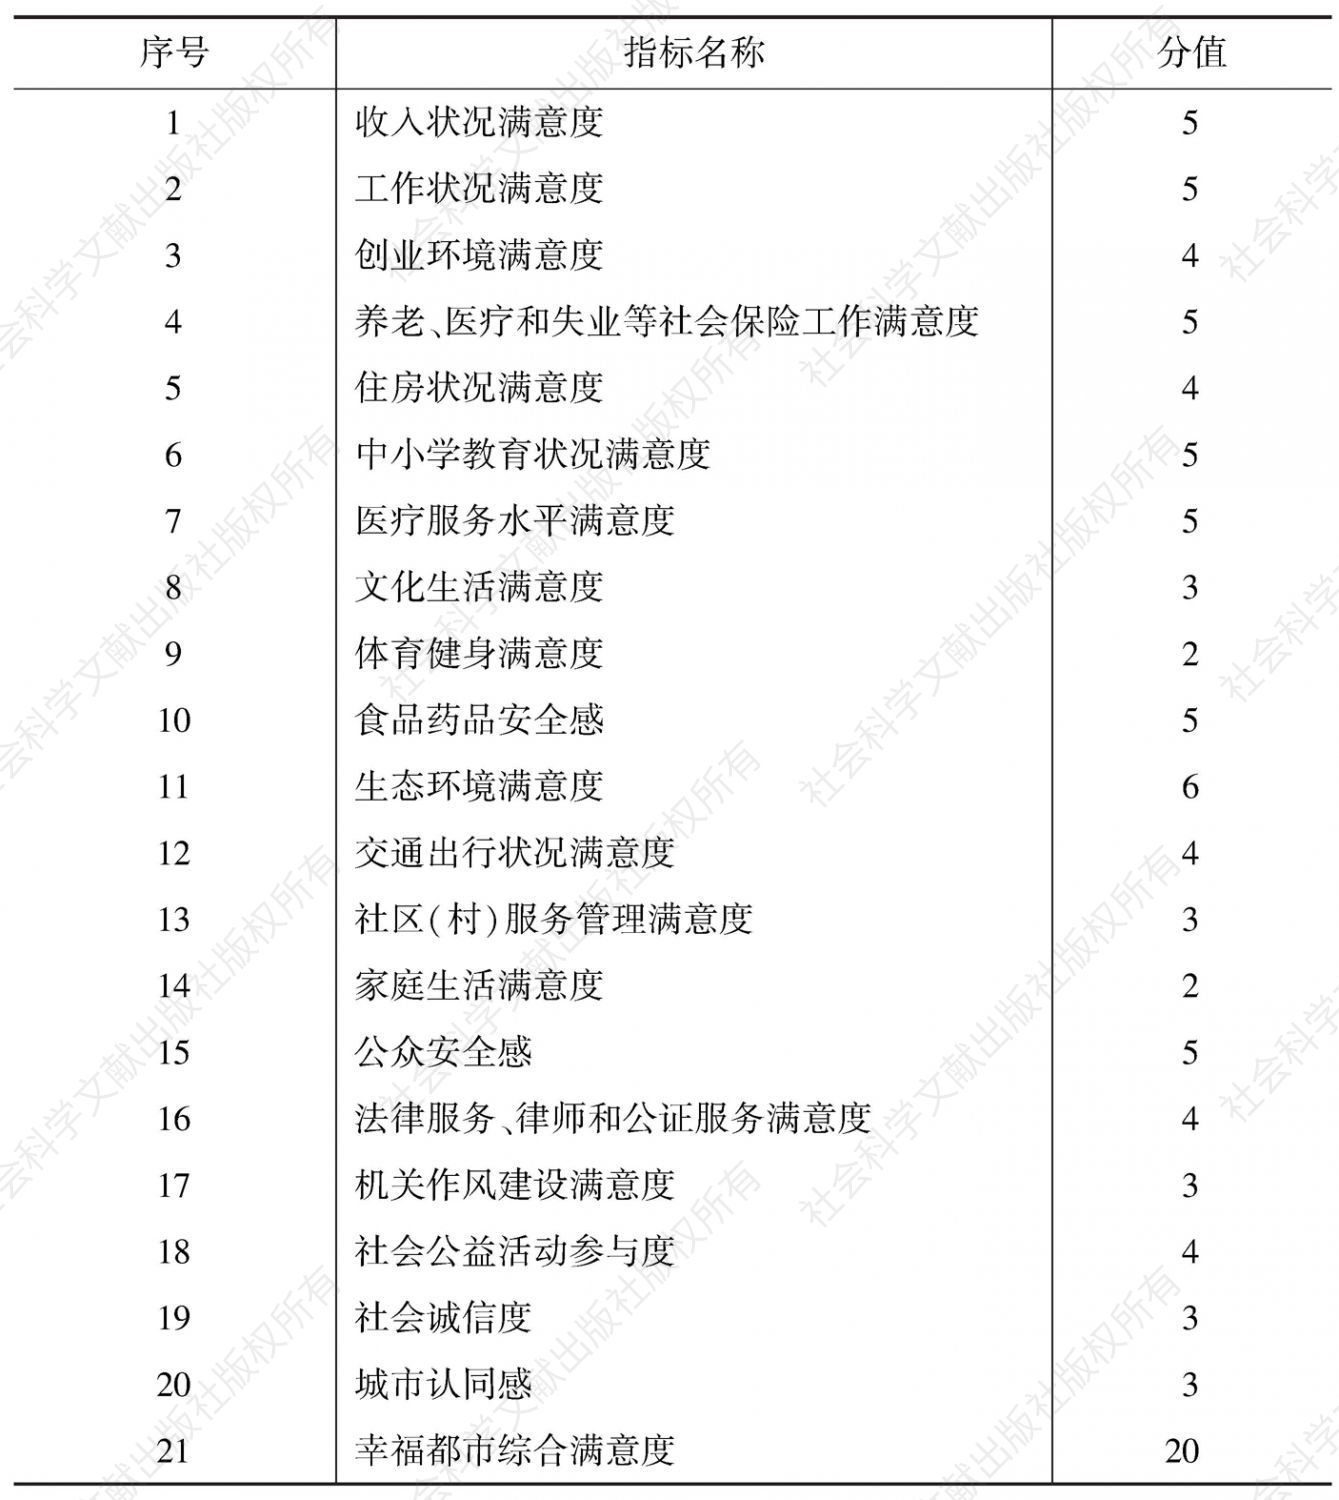 表2 南京市幸福都市群众满意度指标体系（主观指标）